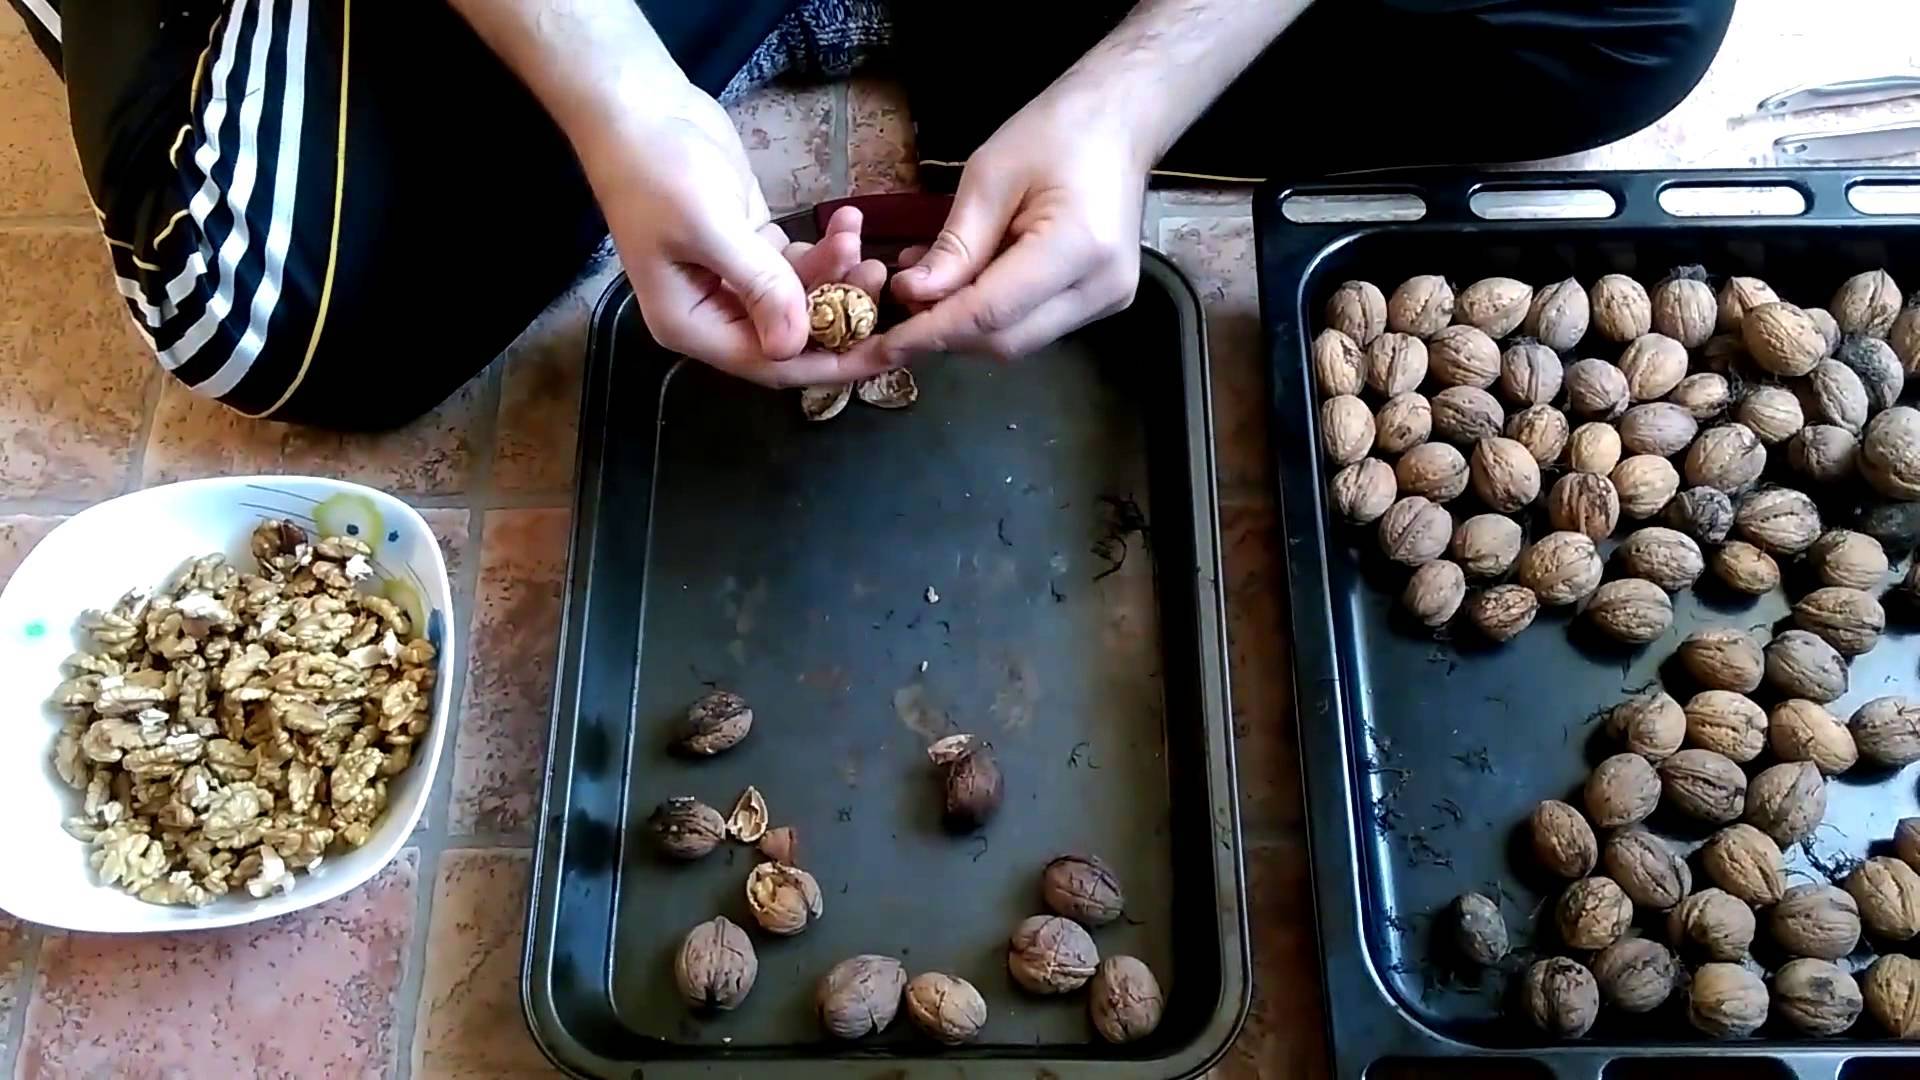 Нужно ли мыть орехи перед употреблением и жаркой: правила для арахиса, фундука, кешью, макадамии, кедрового и грецкого ореха